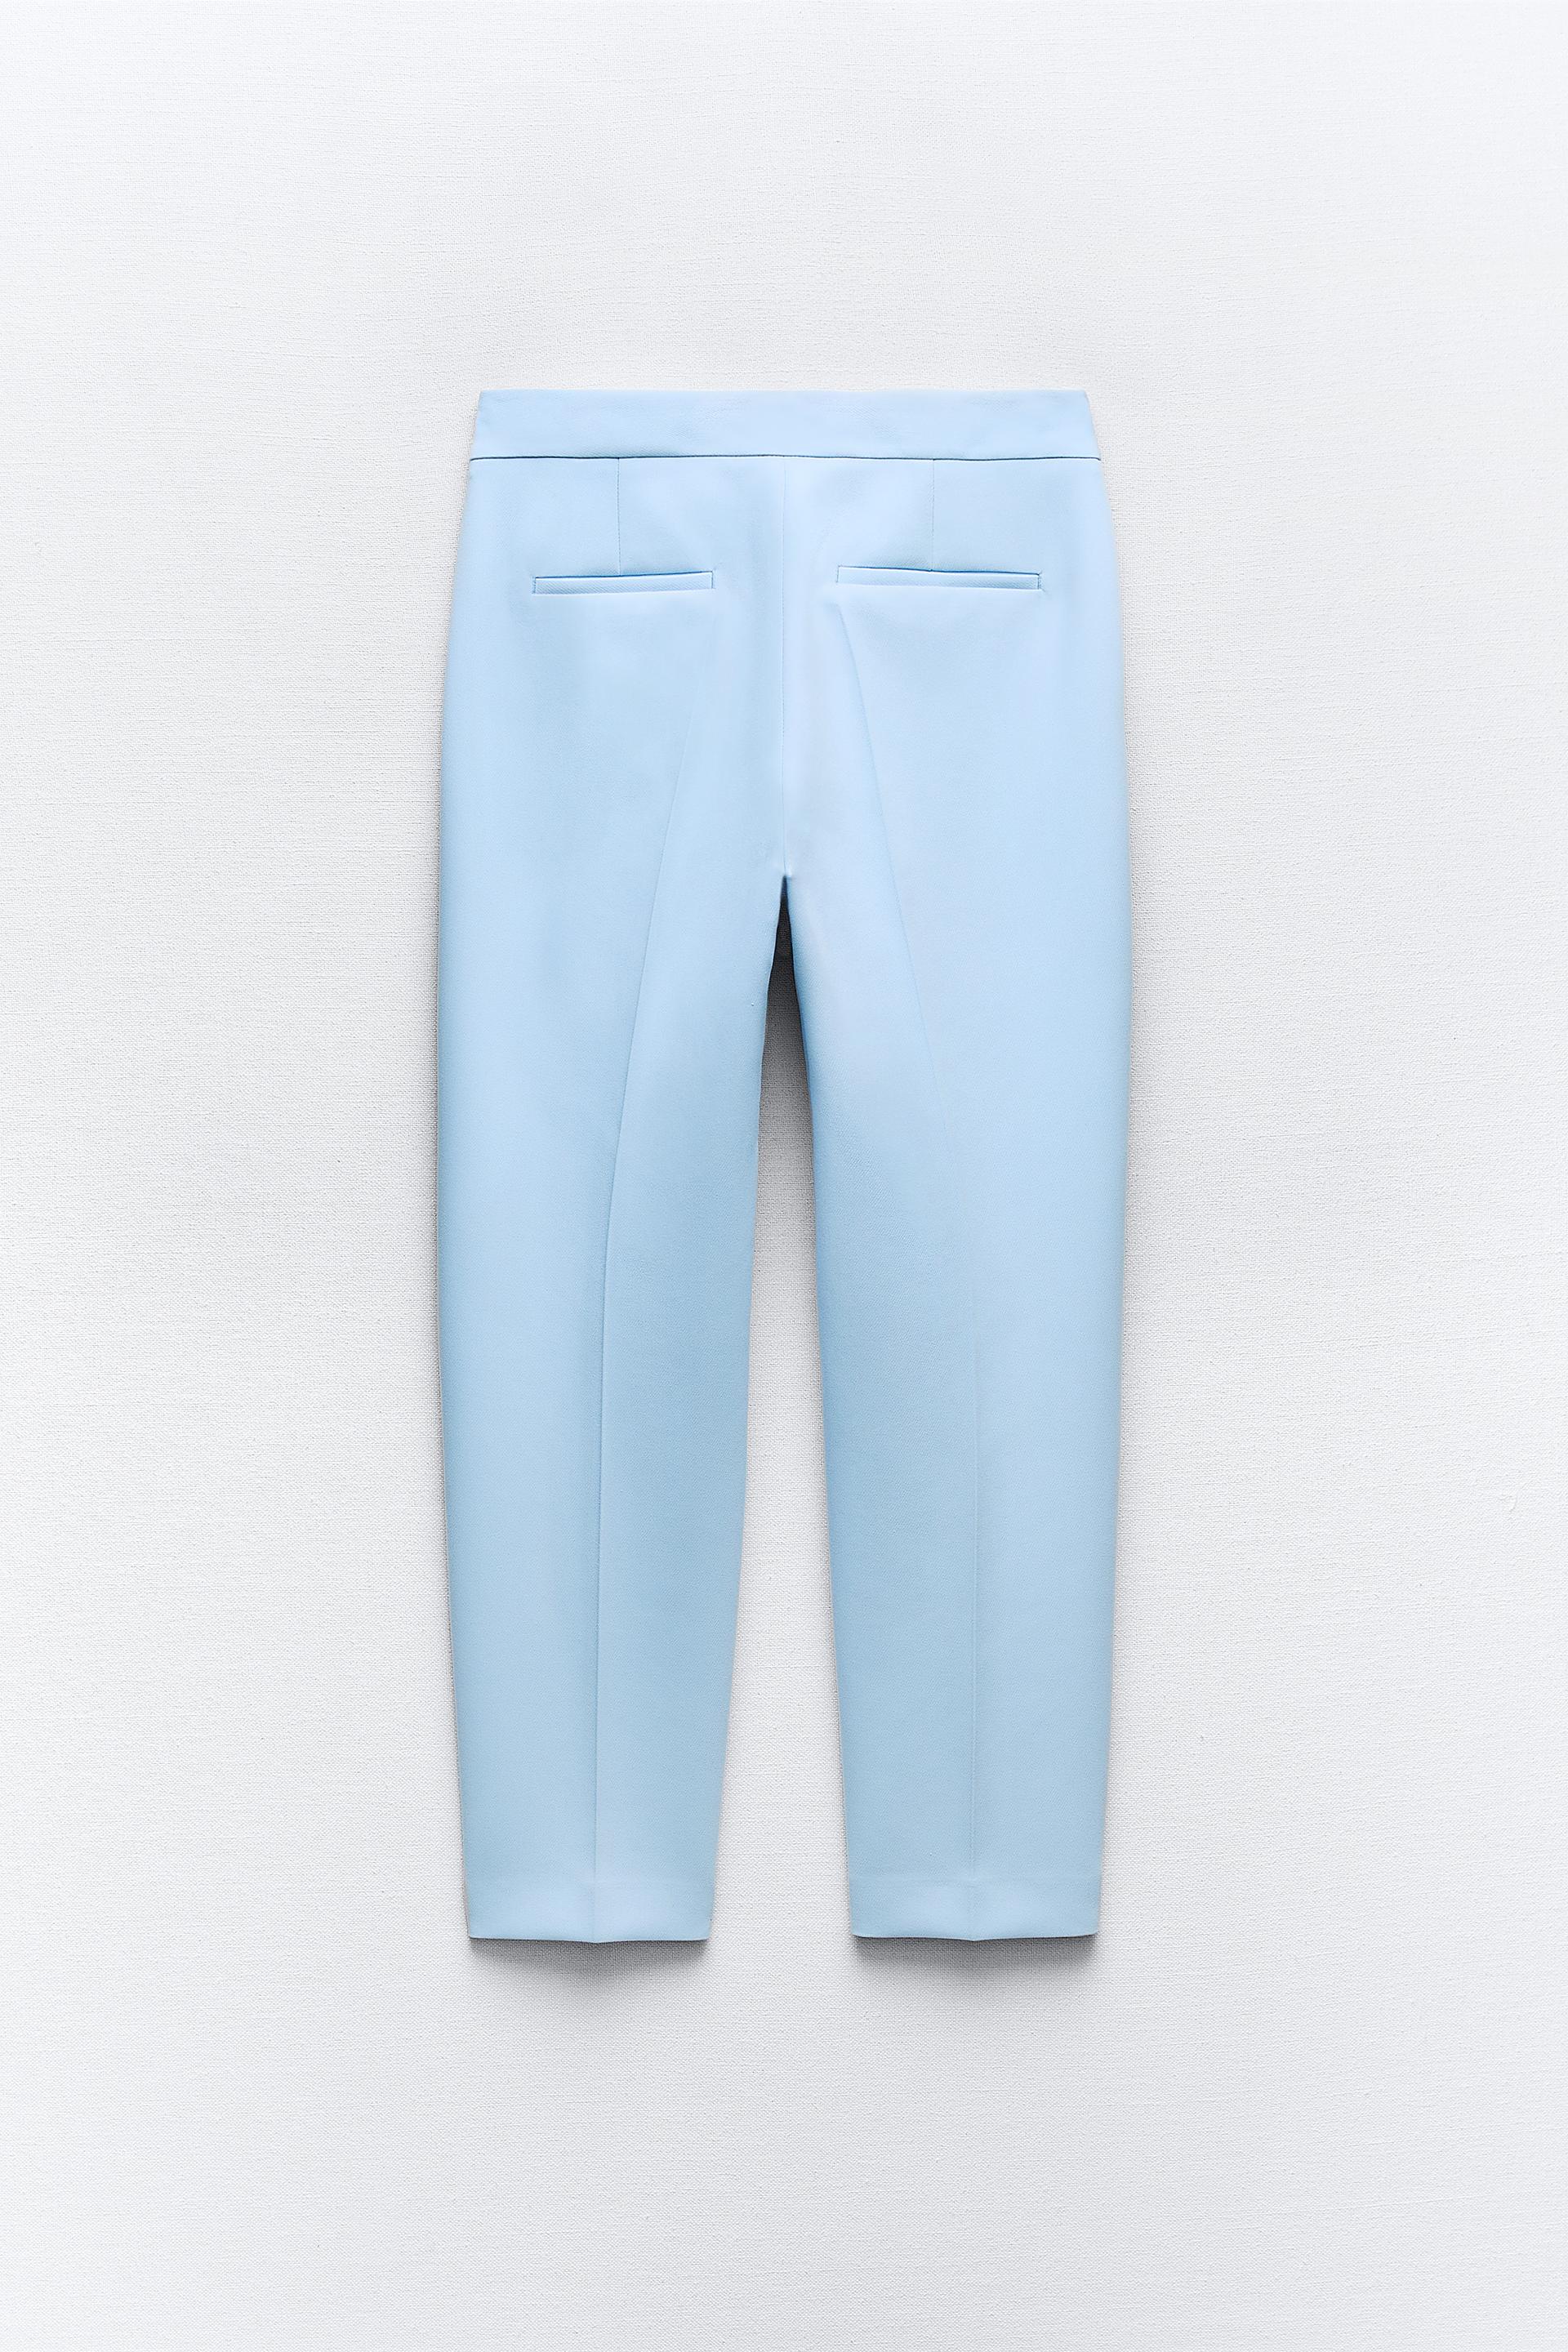 Femme : Pantalon 7/8 blanc - Zara Woman - Taille M - Label Emmaüs